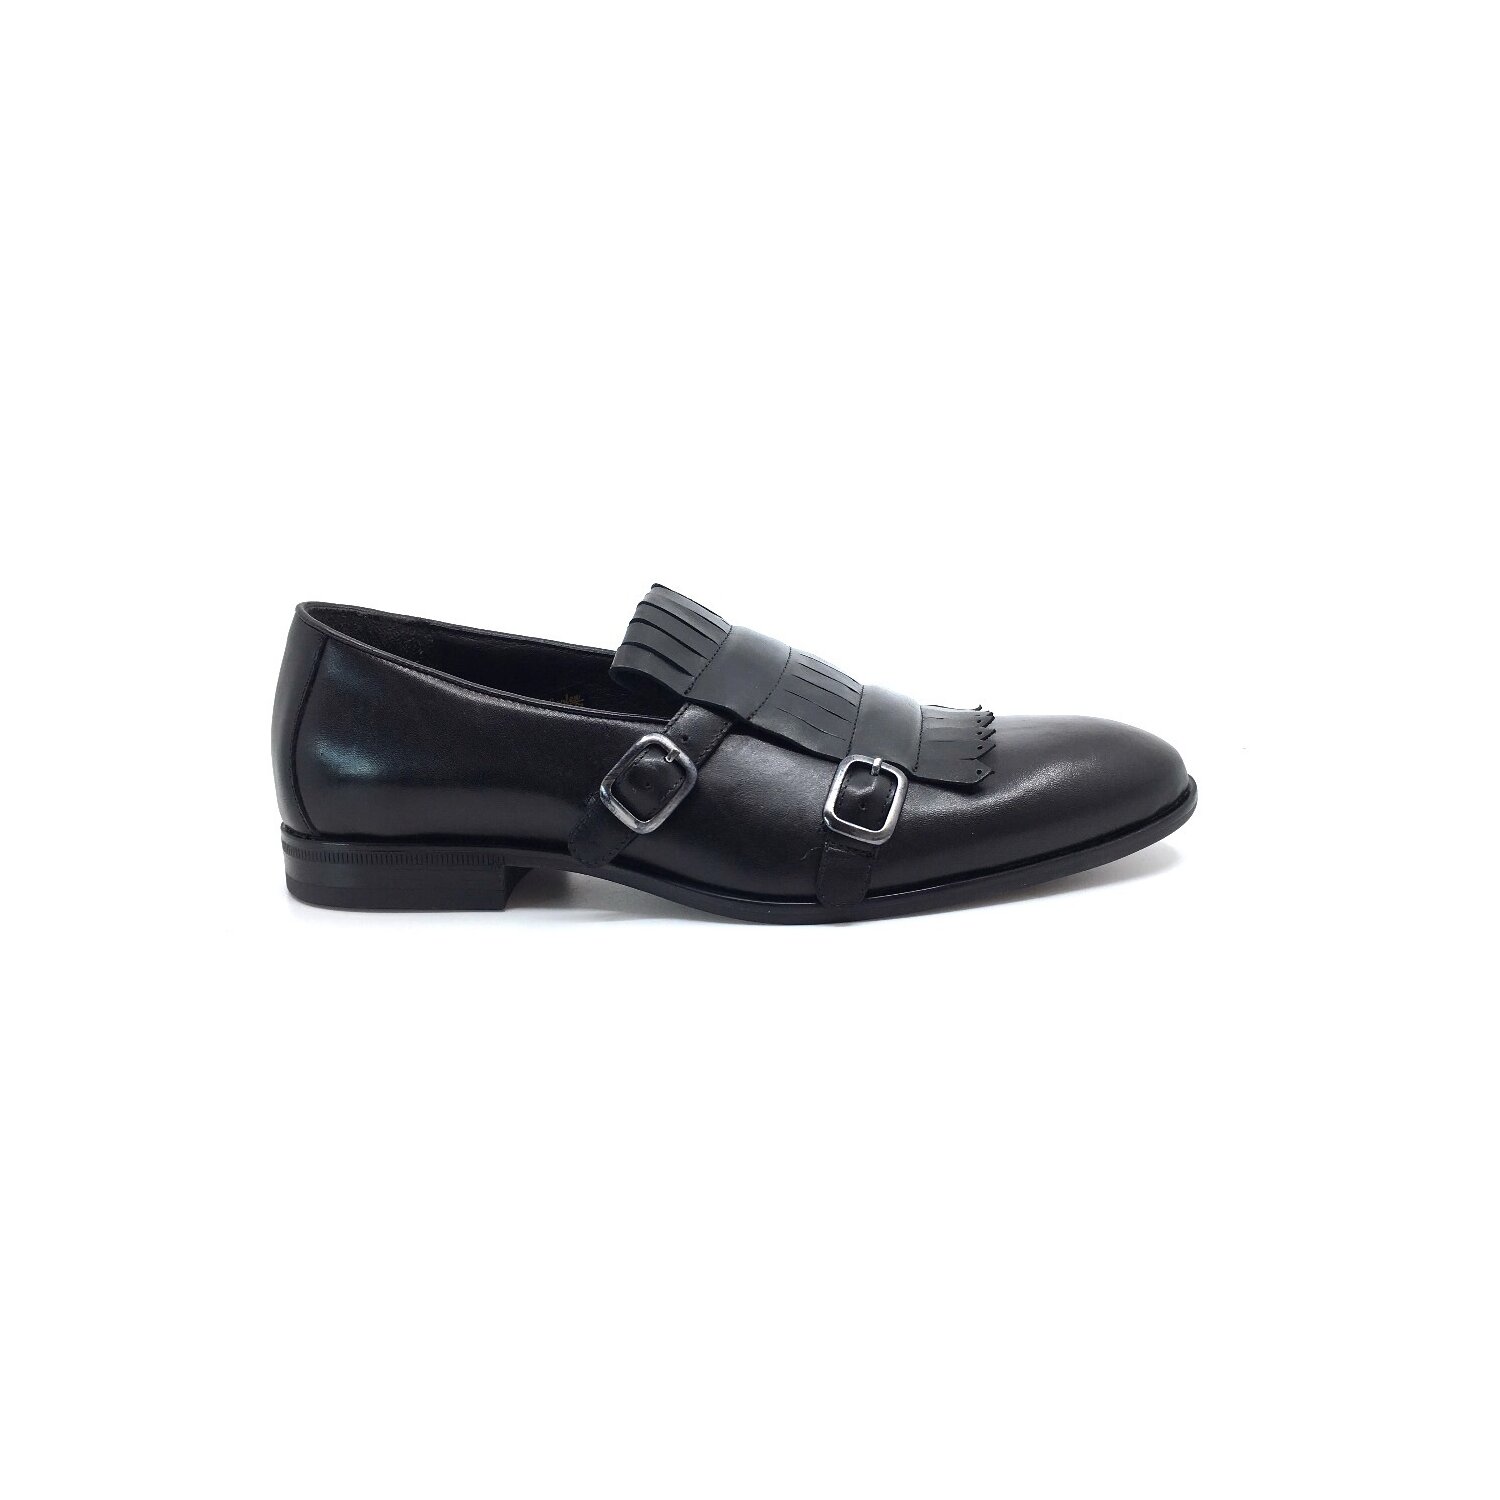 Pantofi eleganti barbati, cu franjuri din piele naturala, Leofex - 586 negru box